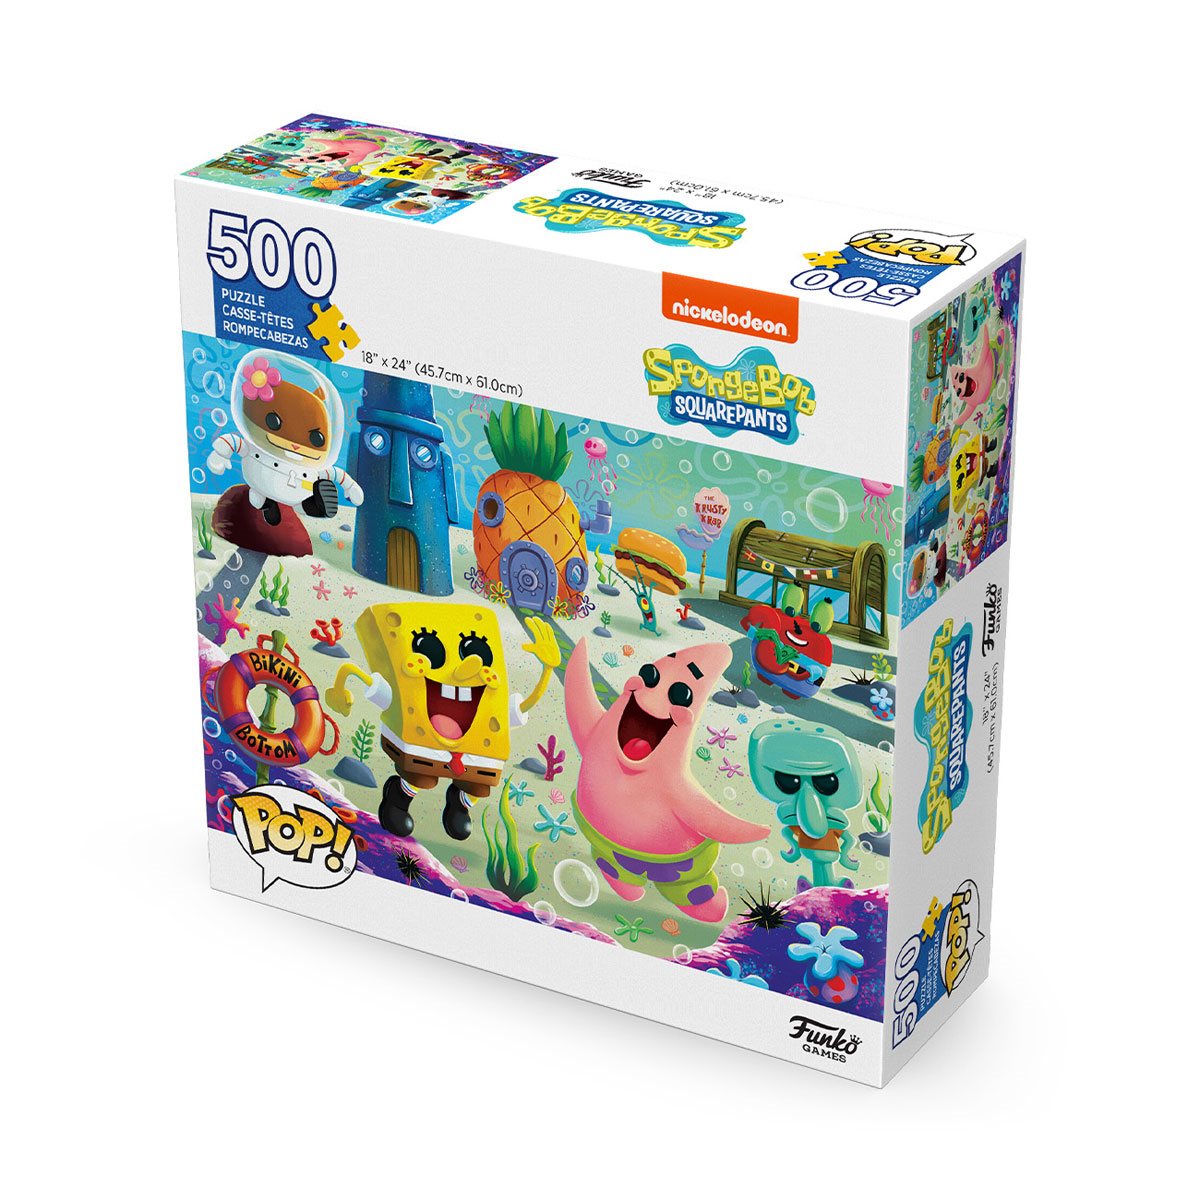 ﻿﻿﻿Spongebob Squarepants Puzzle 3000 Piece Jigsaw Puzzle